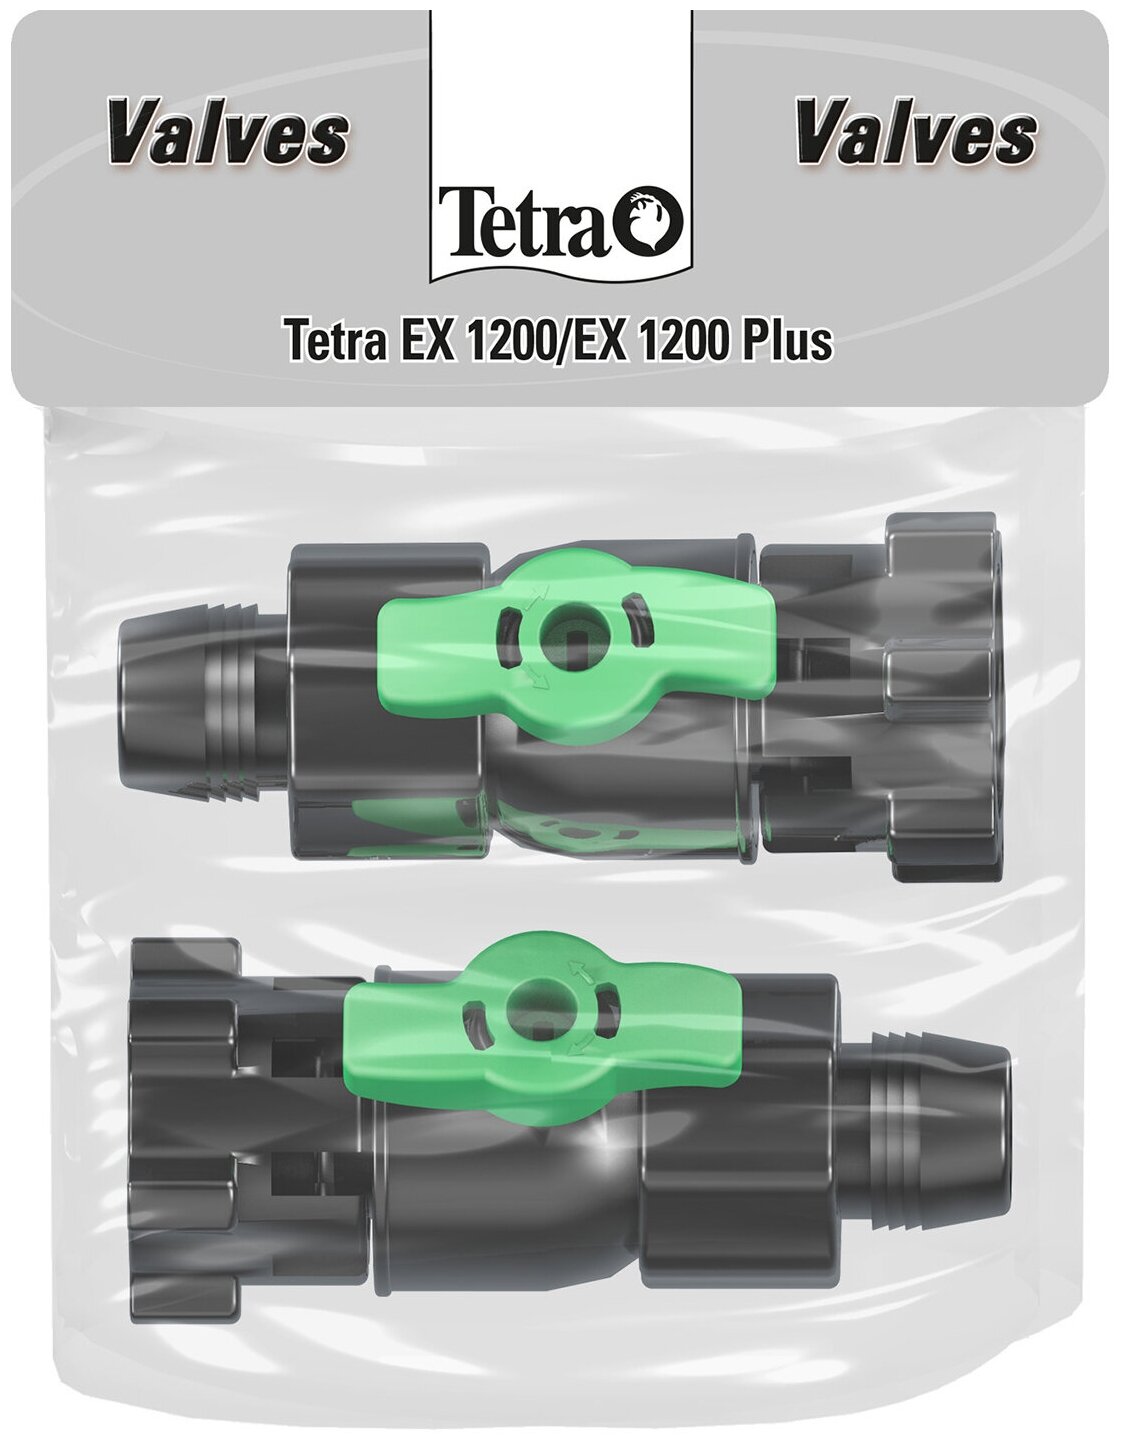 Фильтр внутренний FilterJet 600 компактный для аквариумов 120-170л Tetra FilterJet 600 для аквариумов 120-170л, 550л/ч, 6Вт - фото №16